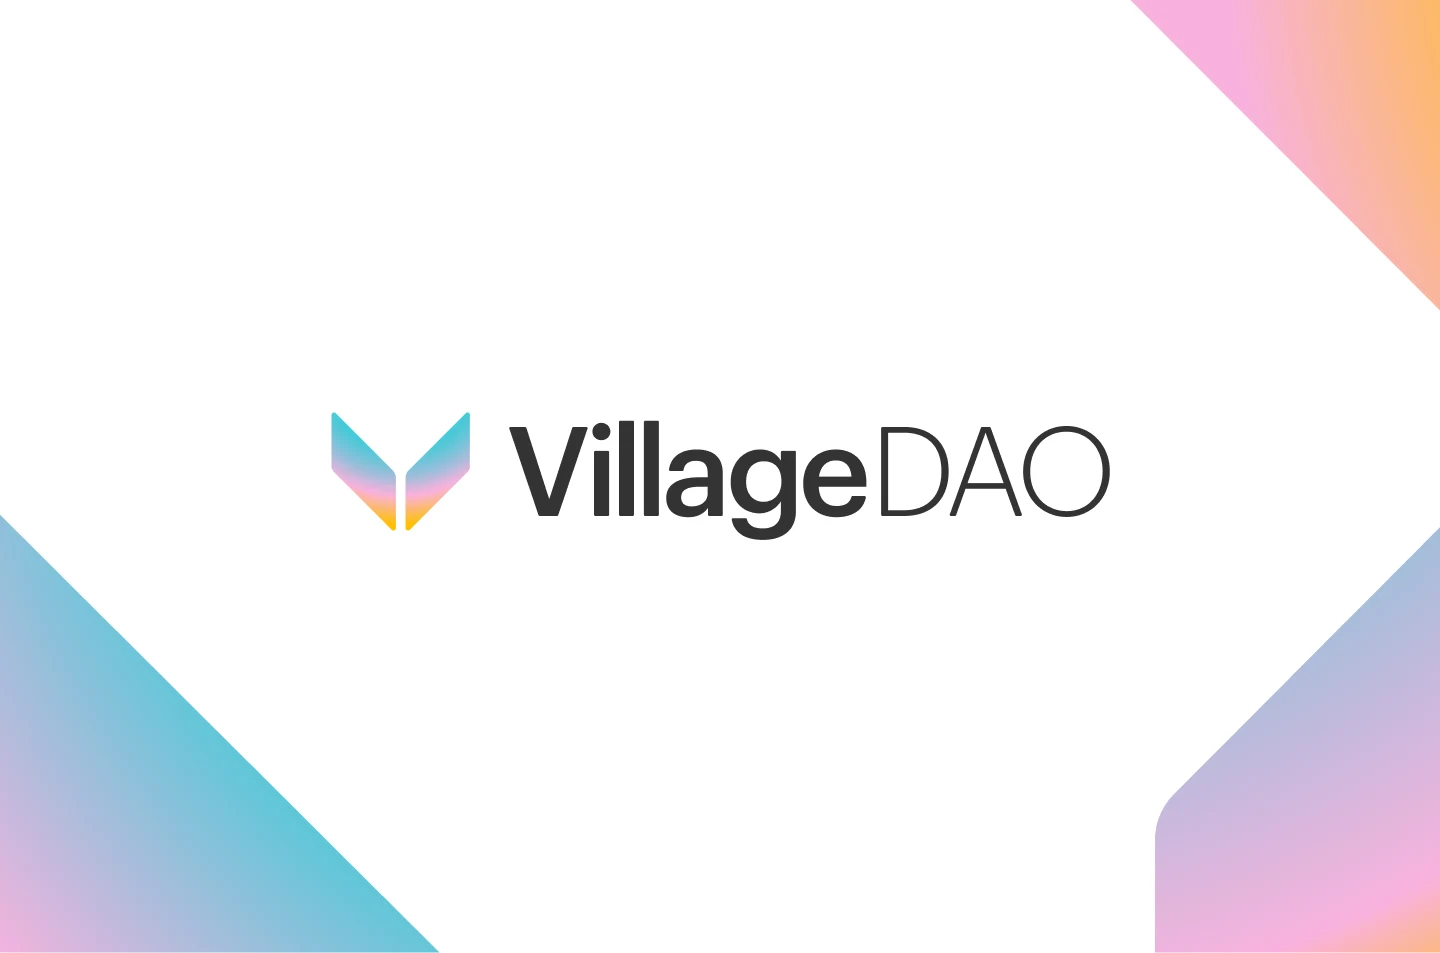 Village DAO